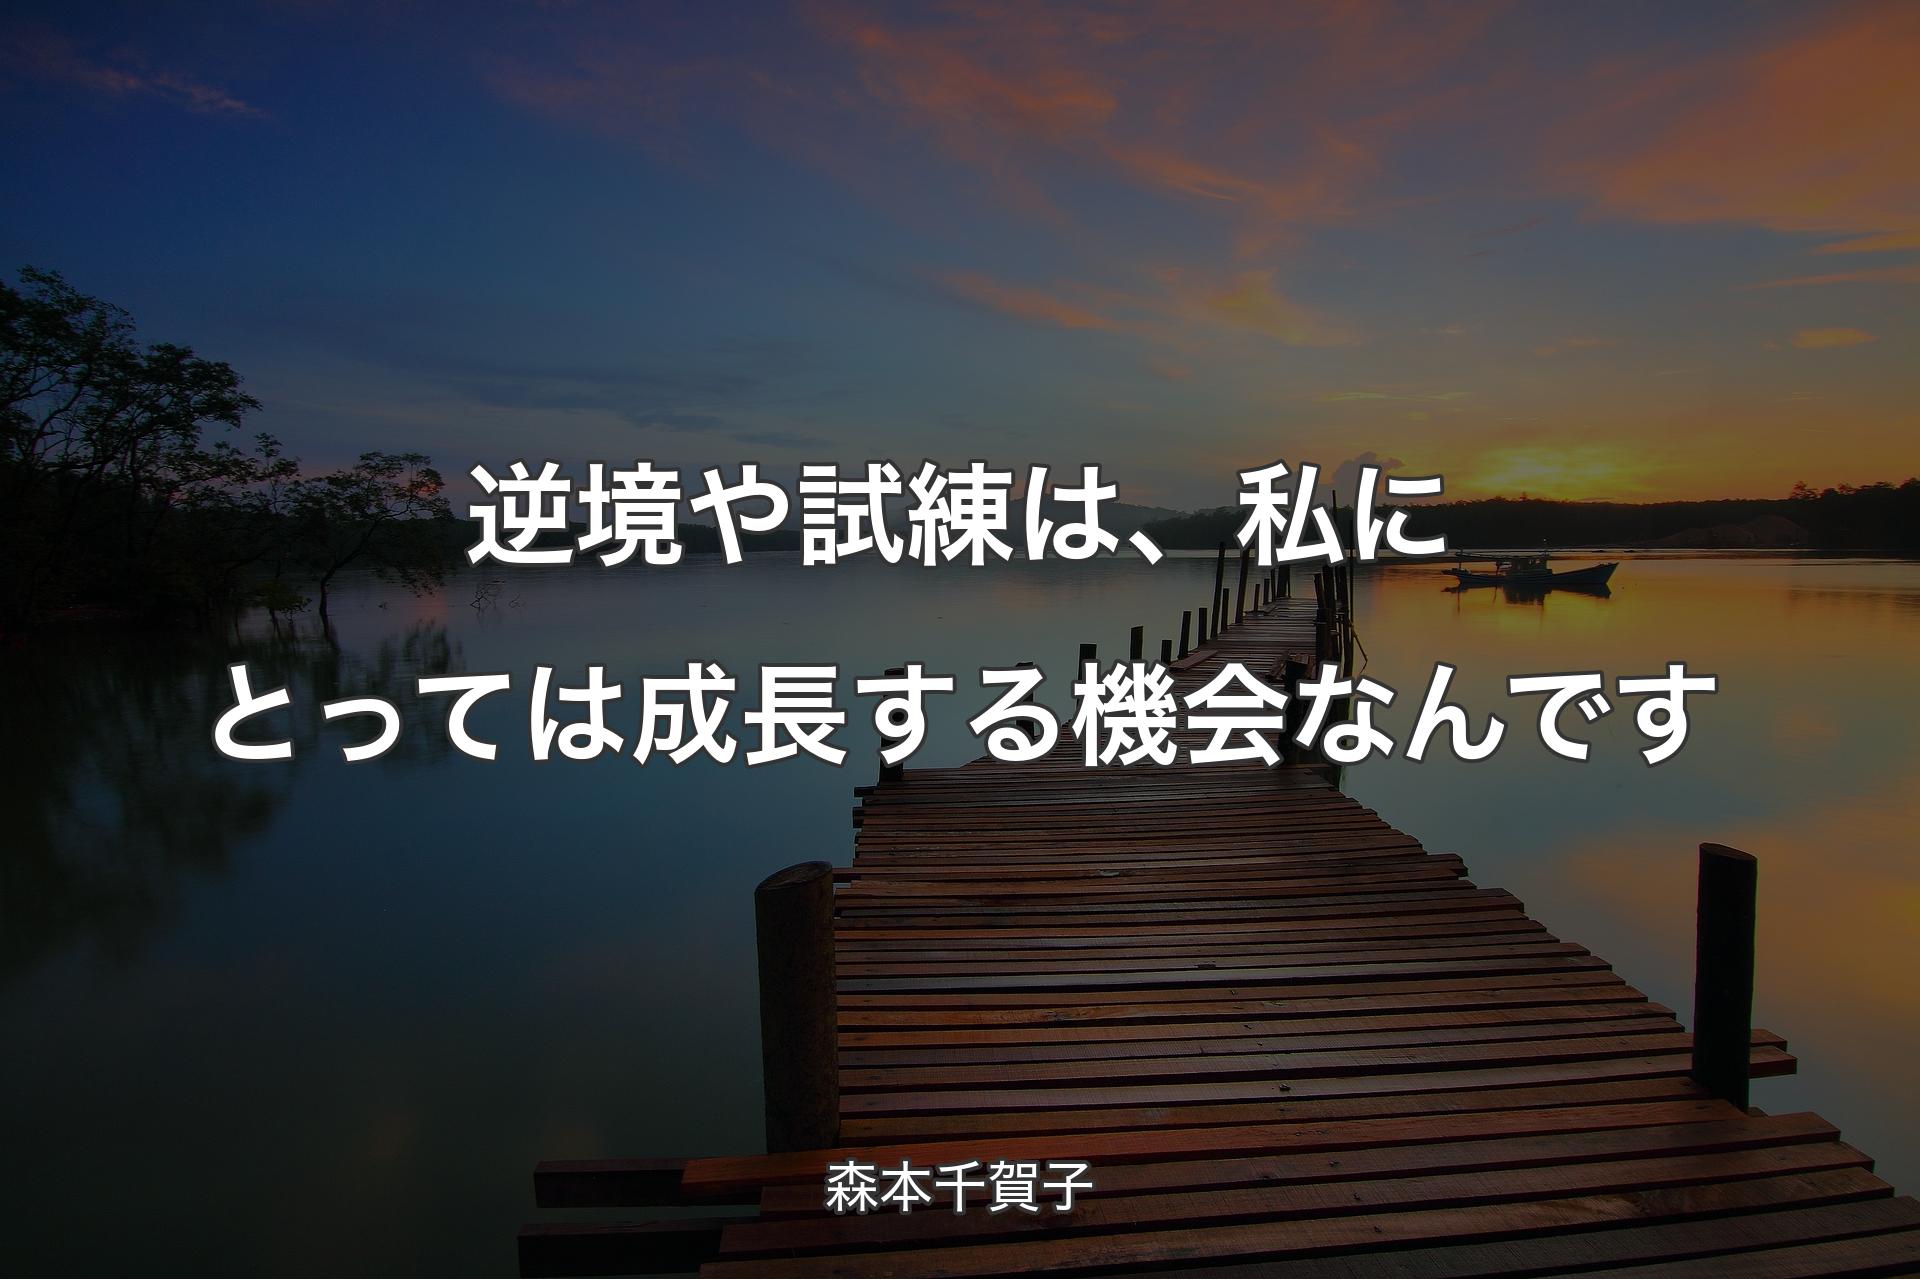 【背景3】逆境や試練は、私にとっては成長する機会なんです - 森本千賀子